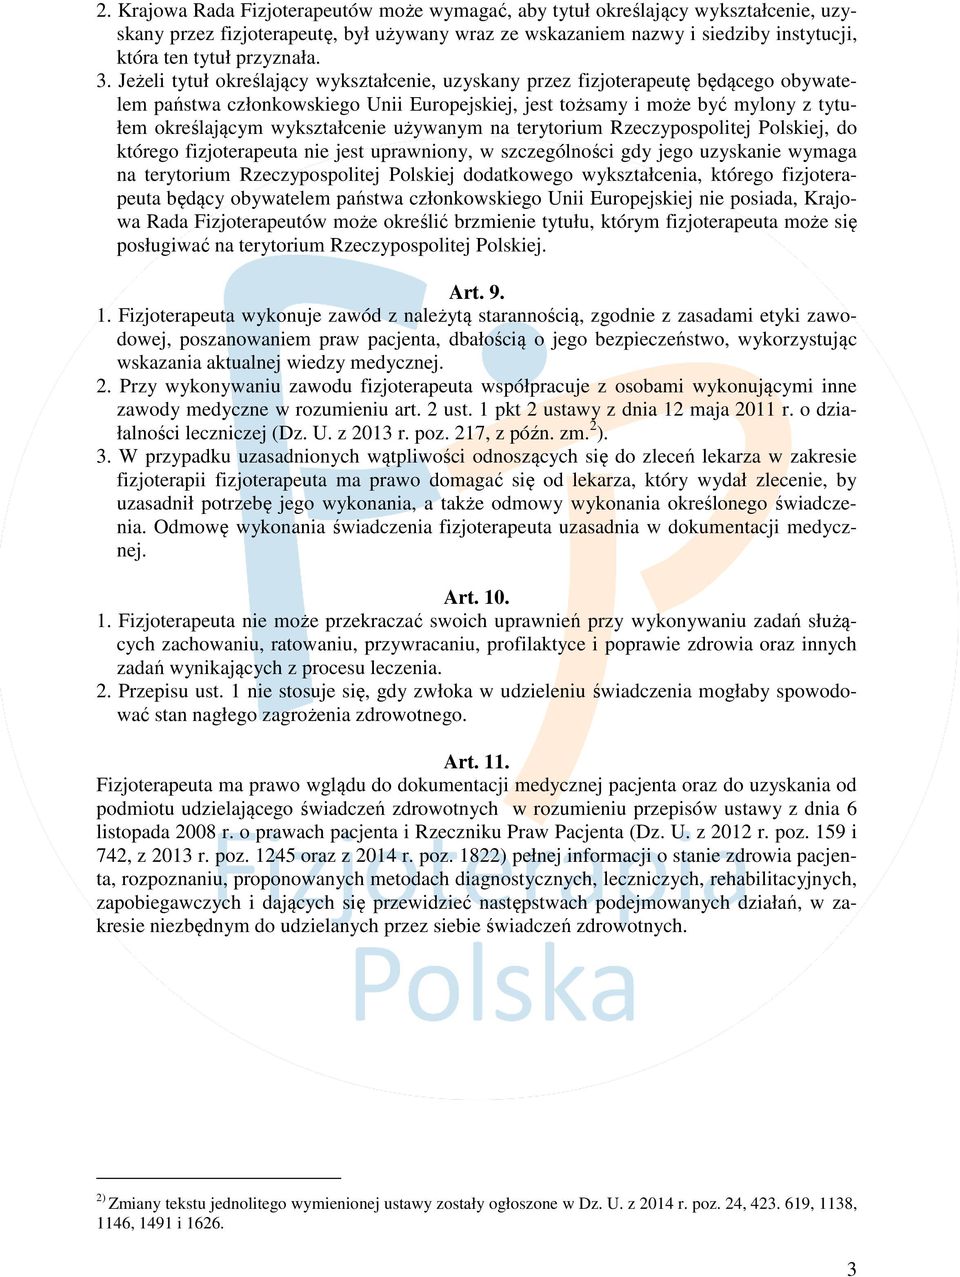 wykształcenie używanym na terytorium Rzeczypospolitej Polskiej, do którego fizjoterapeuta nie jest uprawniony, w szczególności gdy jego uzyskanie wymaga na terytorium Rzeczypospolitej Polskiej